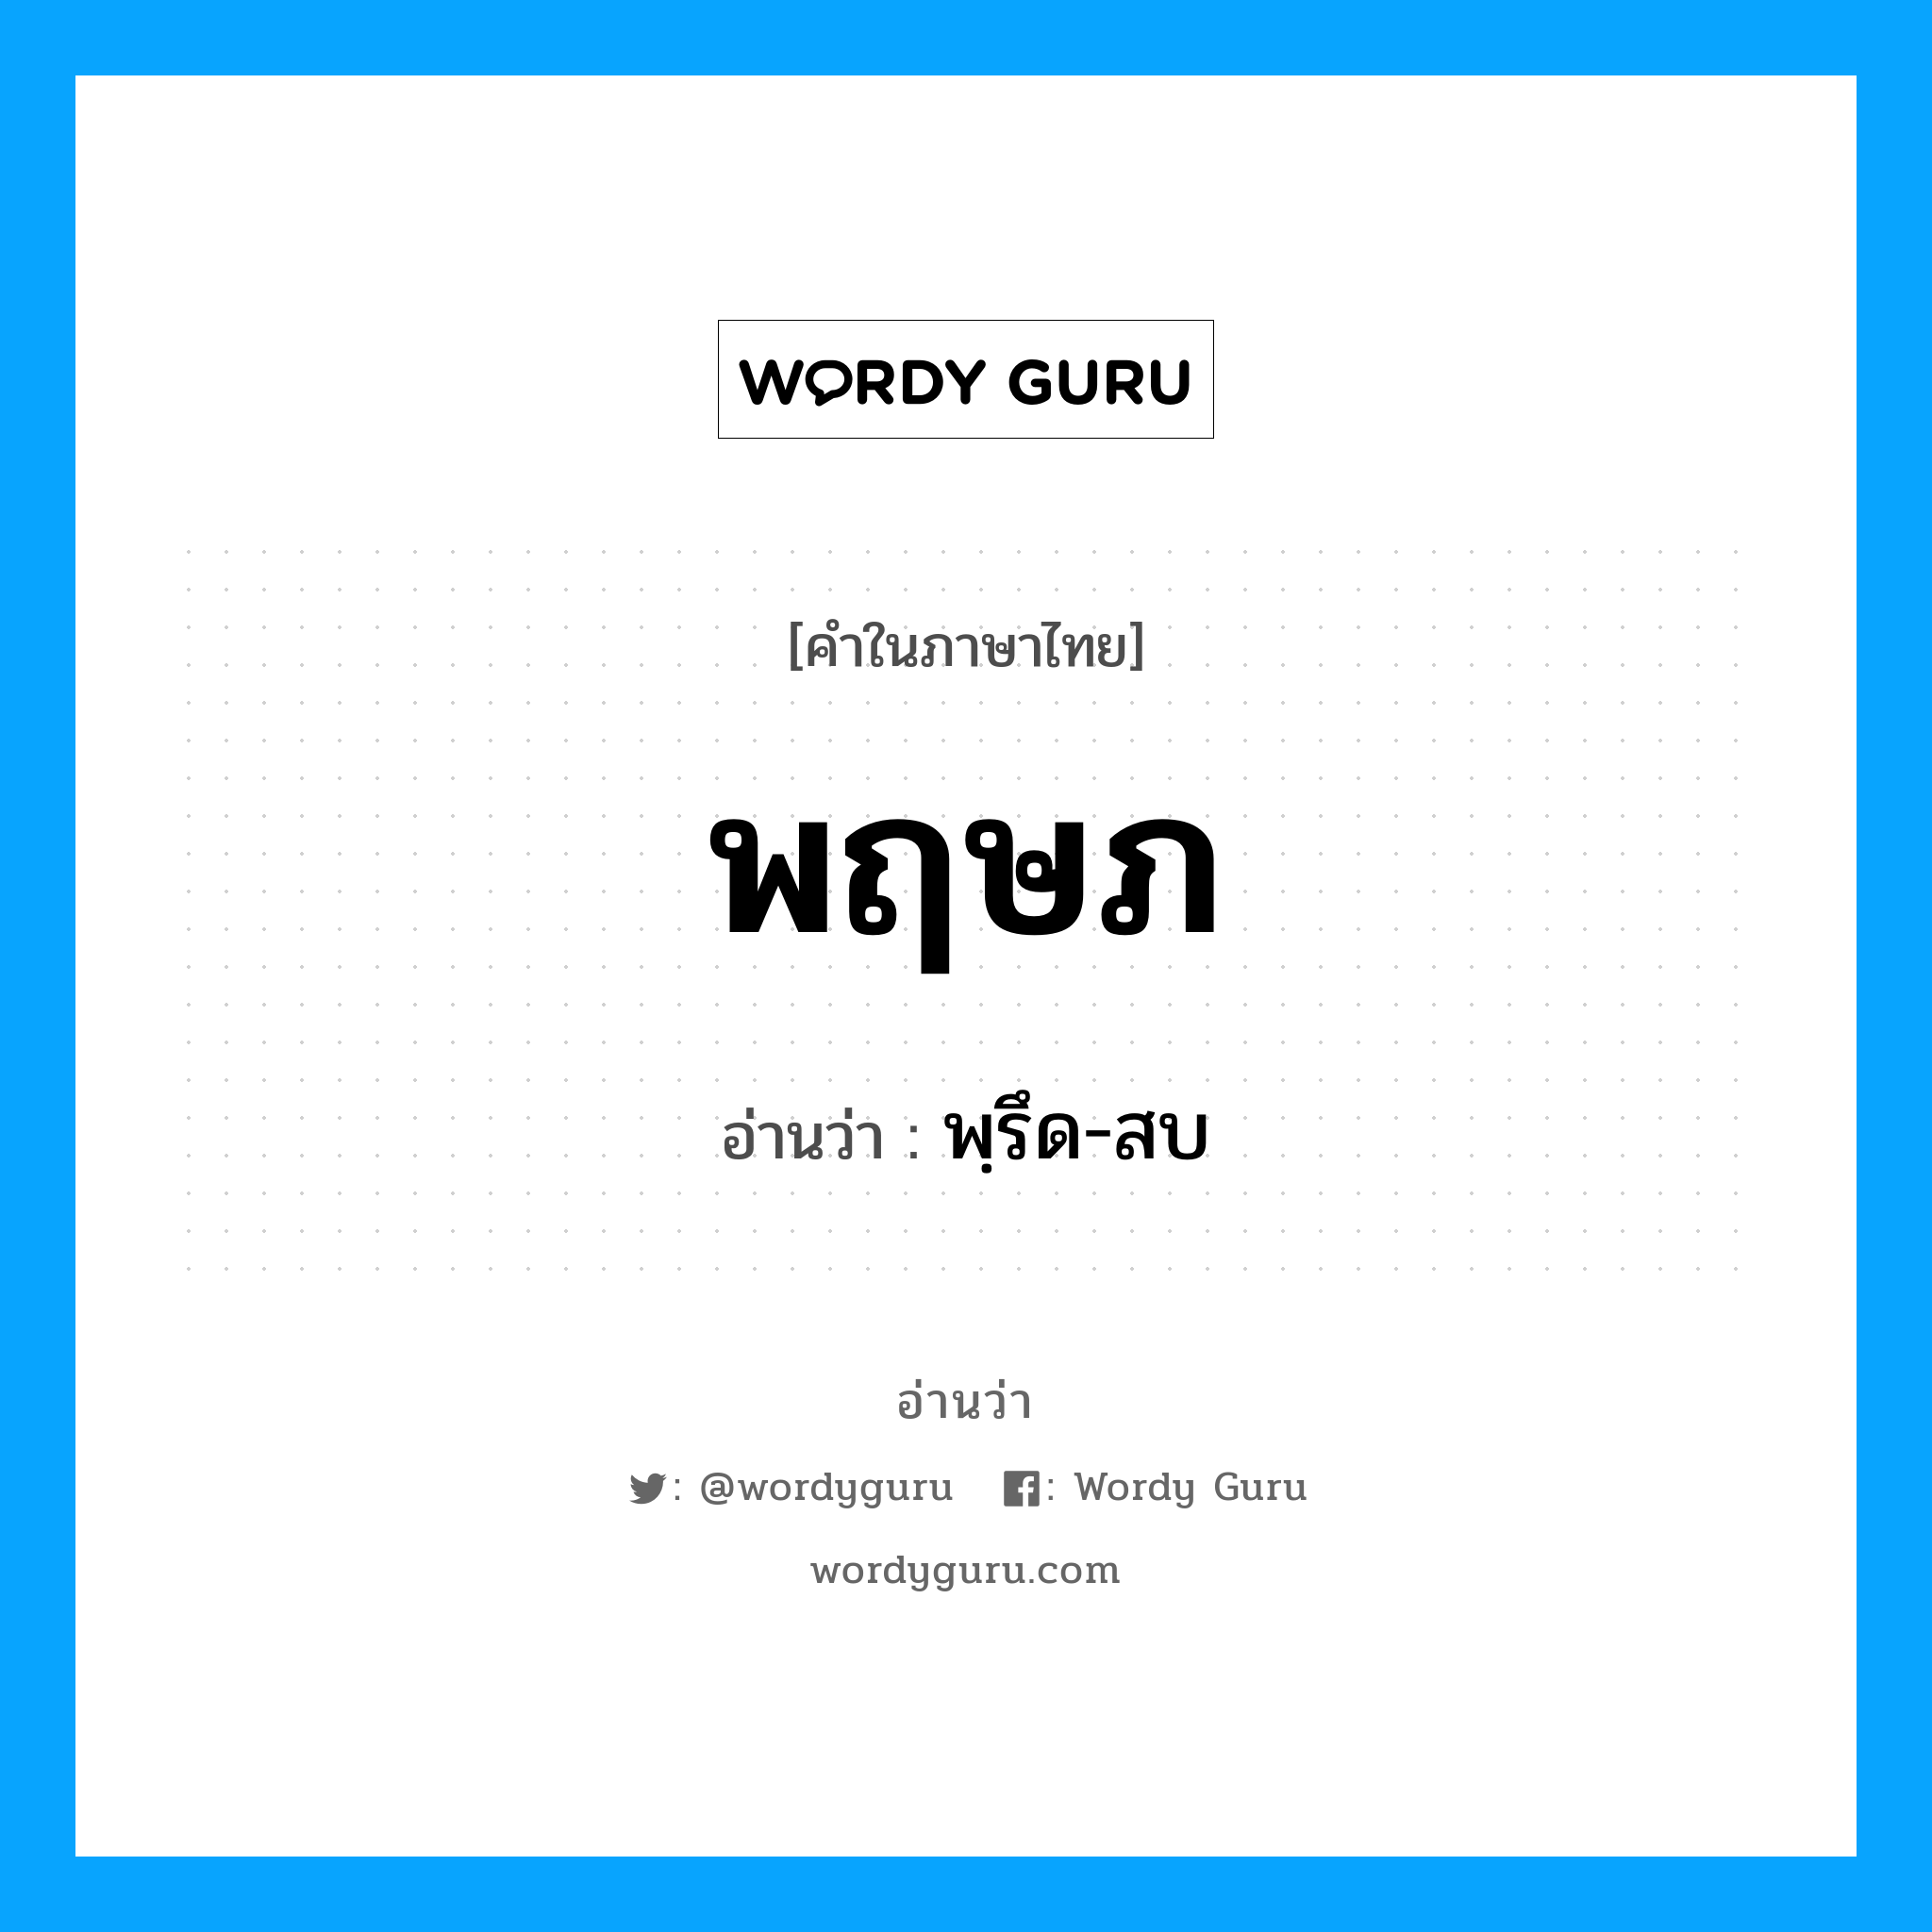 พฺรึด-สบ เป็นคำอ่านของคำไหน?, คำในภาษาไทย พฺรึด-สบ อ่านว่า พฤษภ